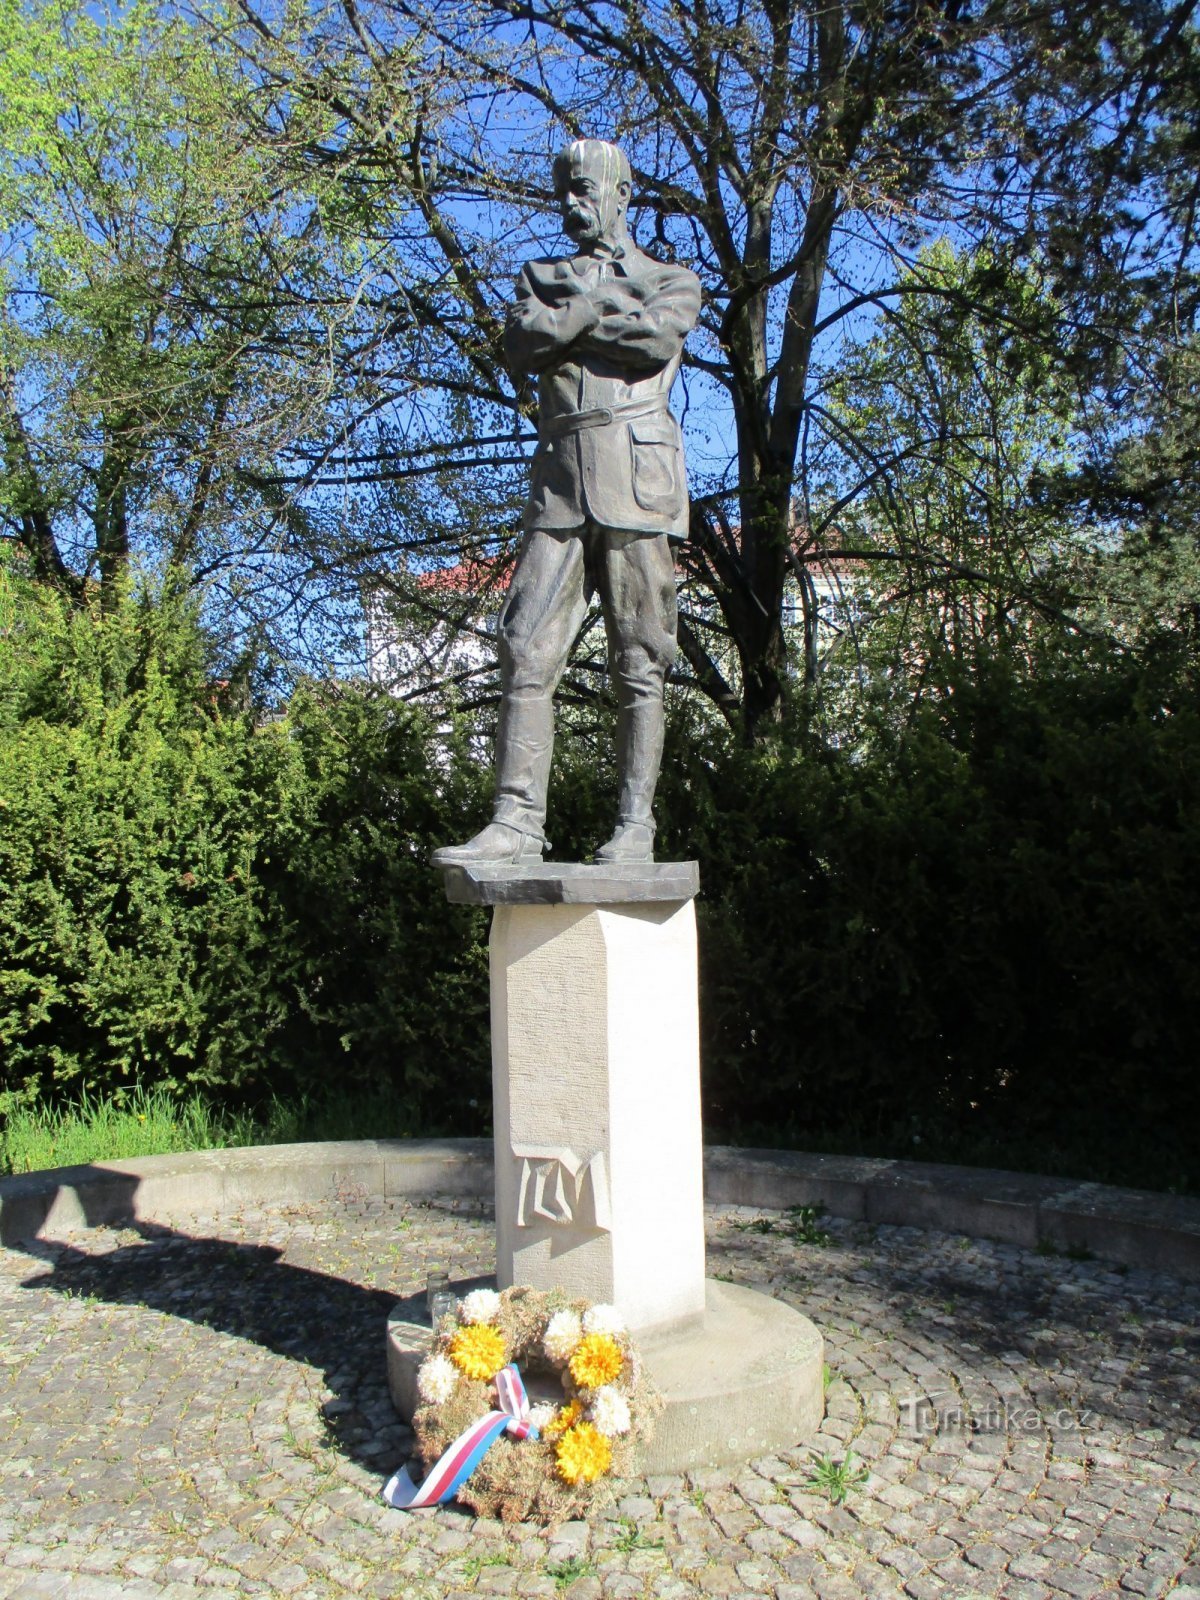 Monumento a TG Masaryk (Jaroměř, 22.4.2020 aprile XNUMX)